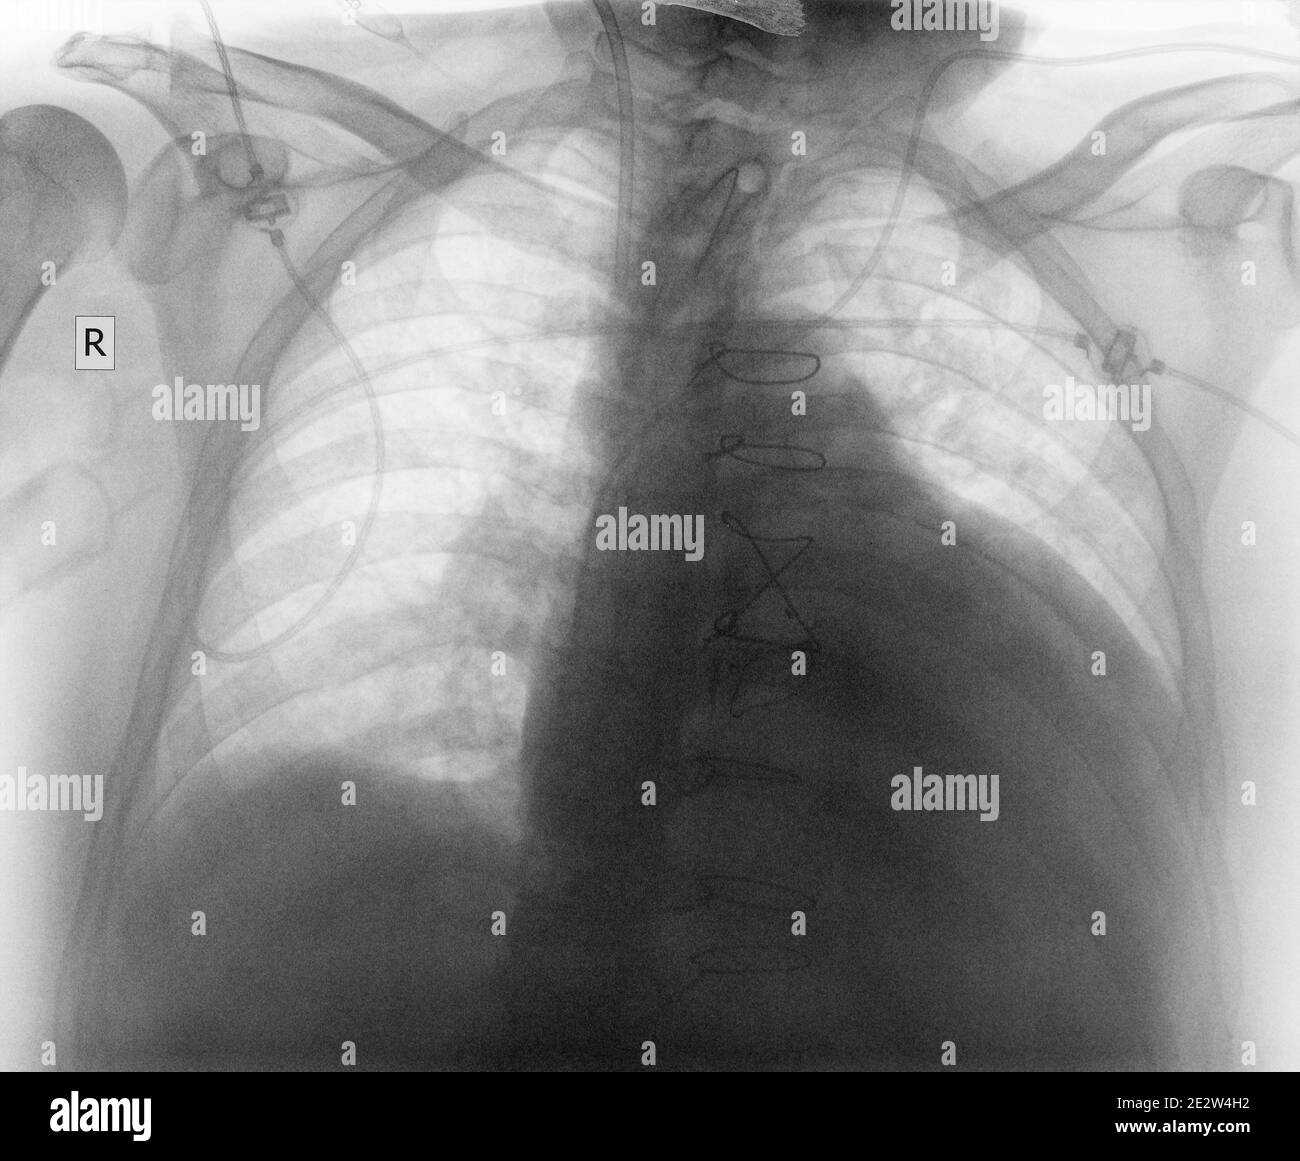 Immagine radiografica del torace dopo un intervento cardiaco. Foto Stock